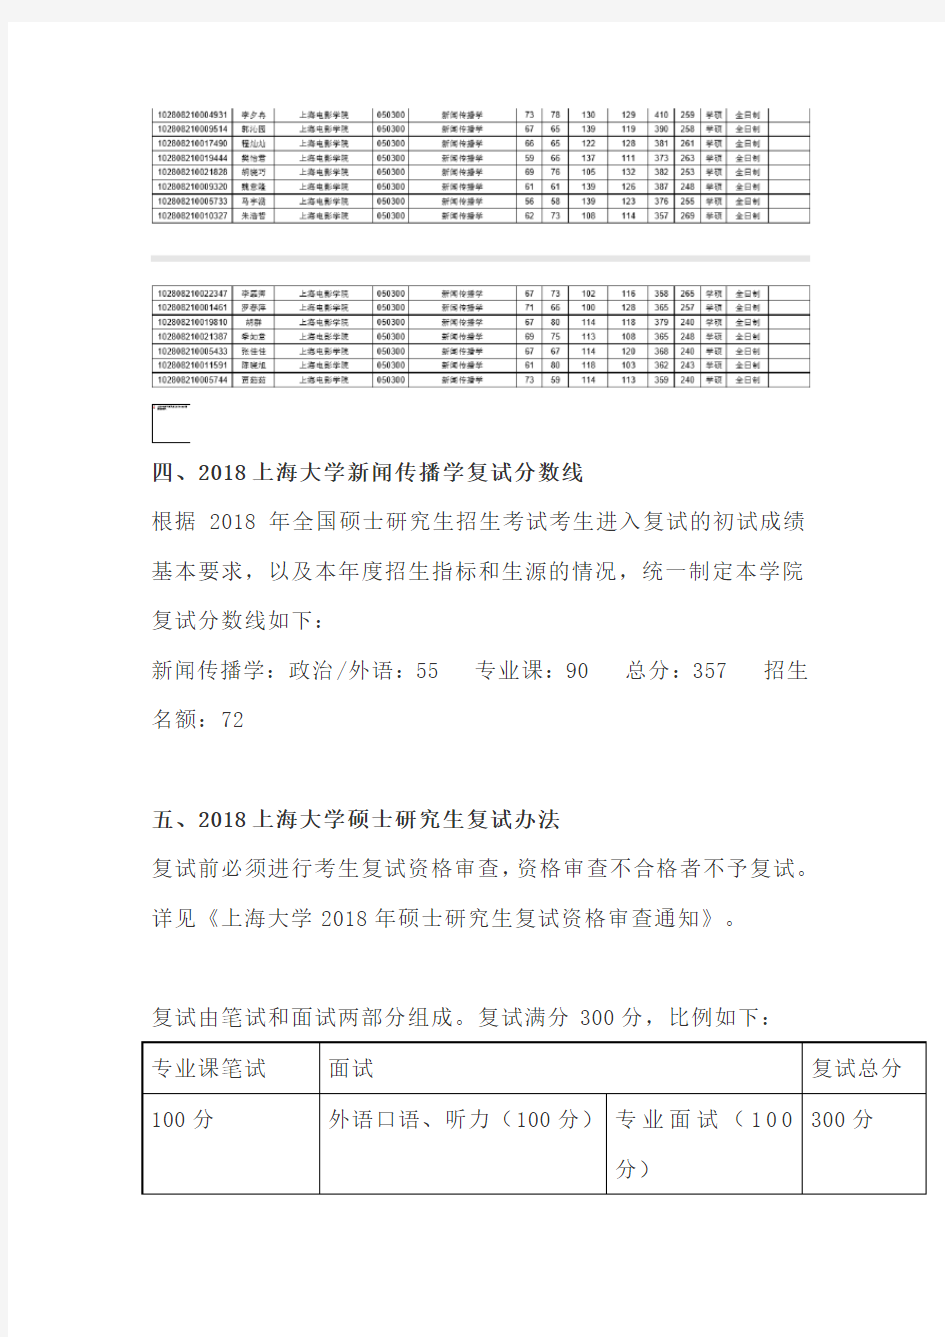 【复试】2019上海大学新闻传播学复试分数线、录取人数、录取名单